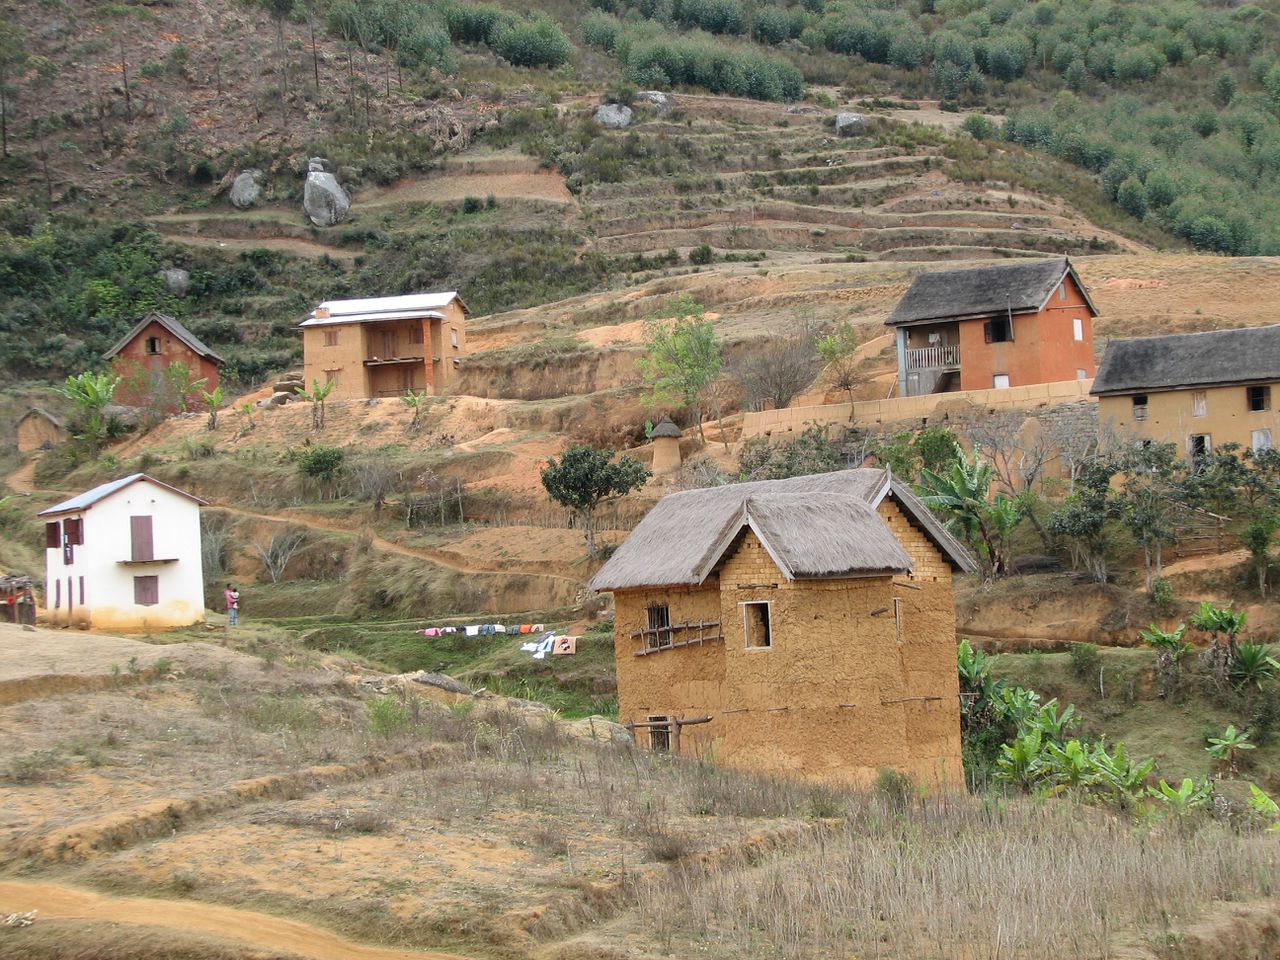 Huizen op het platteland van Madagaskar (niet het huis waar de brand plaatsvond).